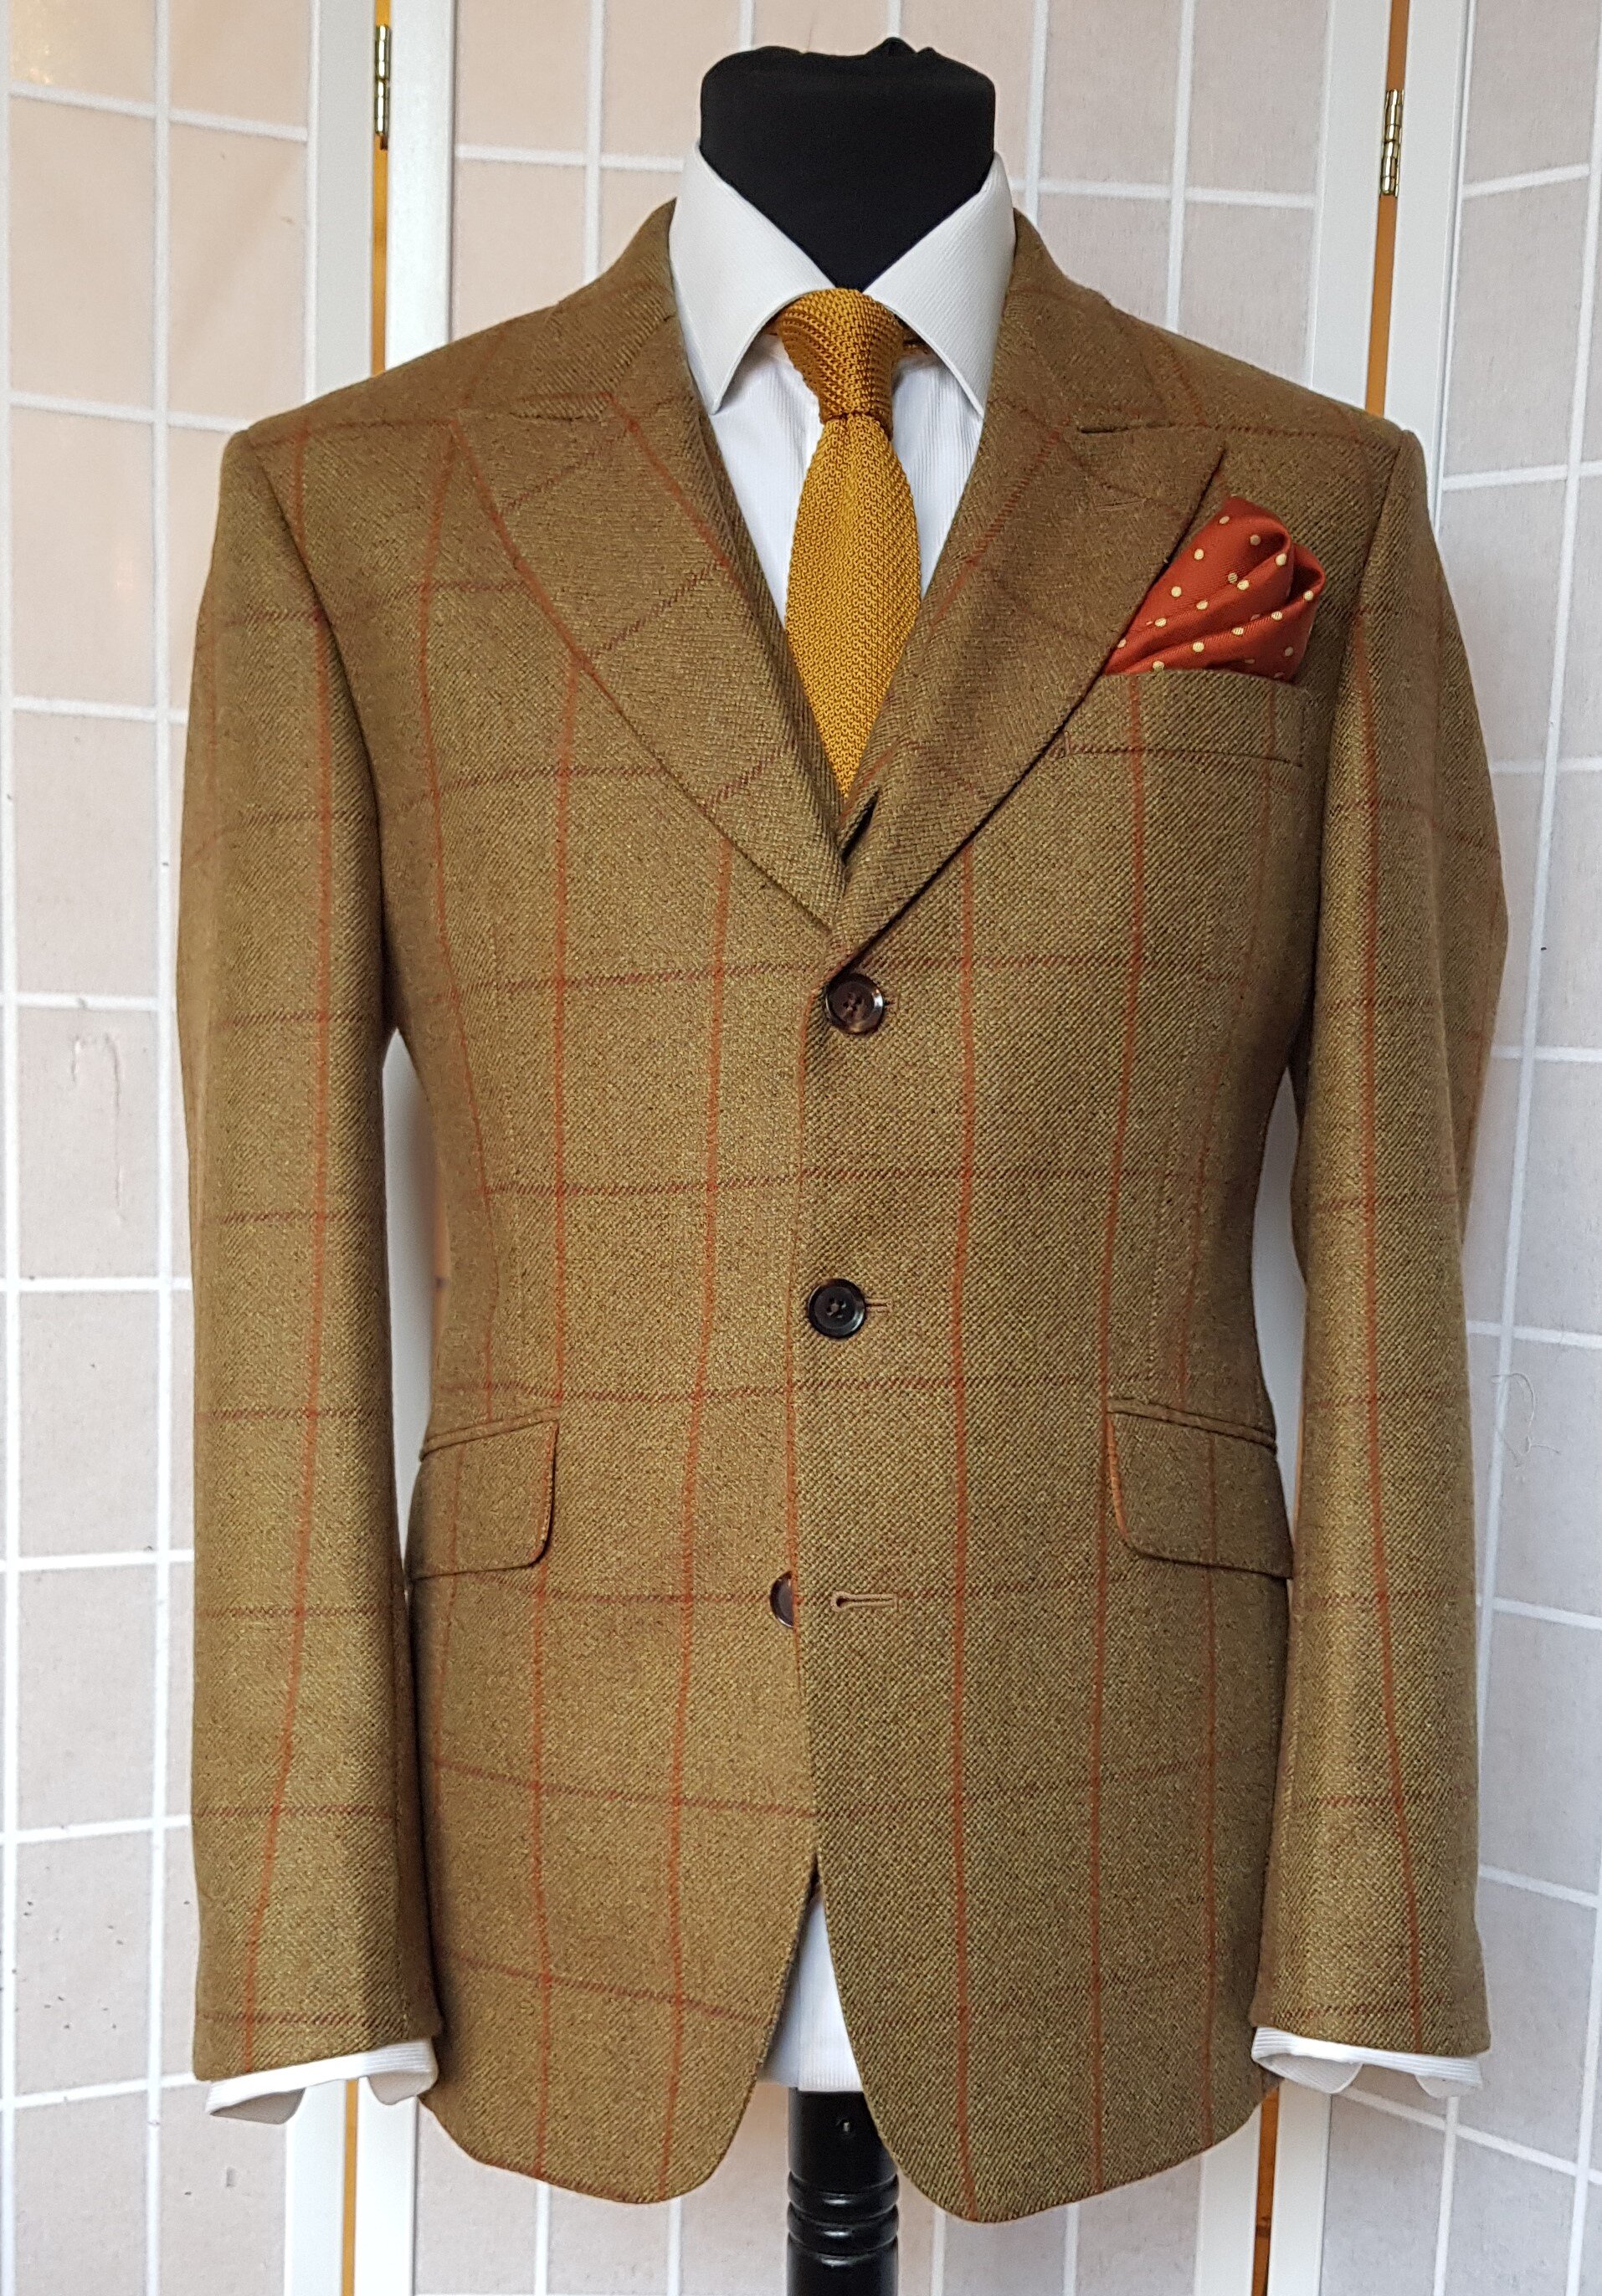 3 piece suit in Glenroyal tweed (15).jpg